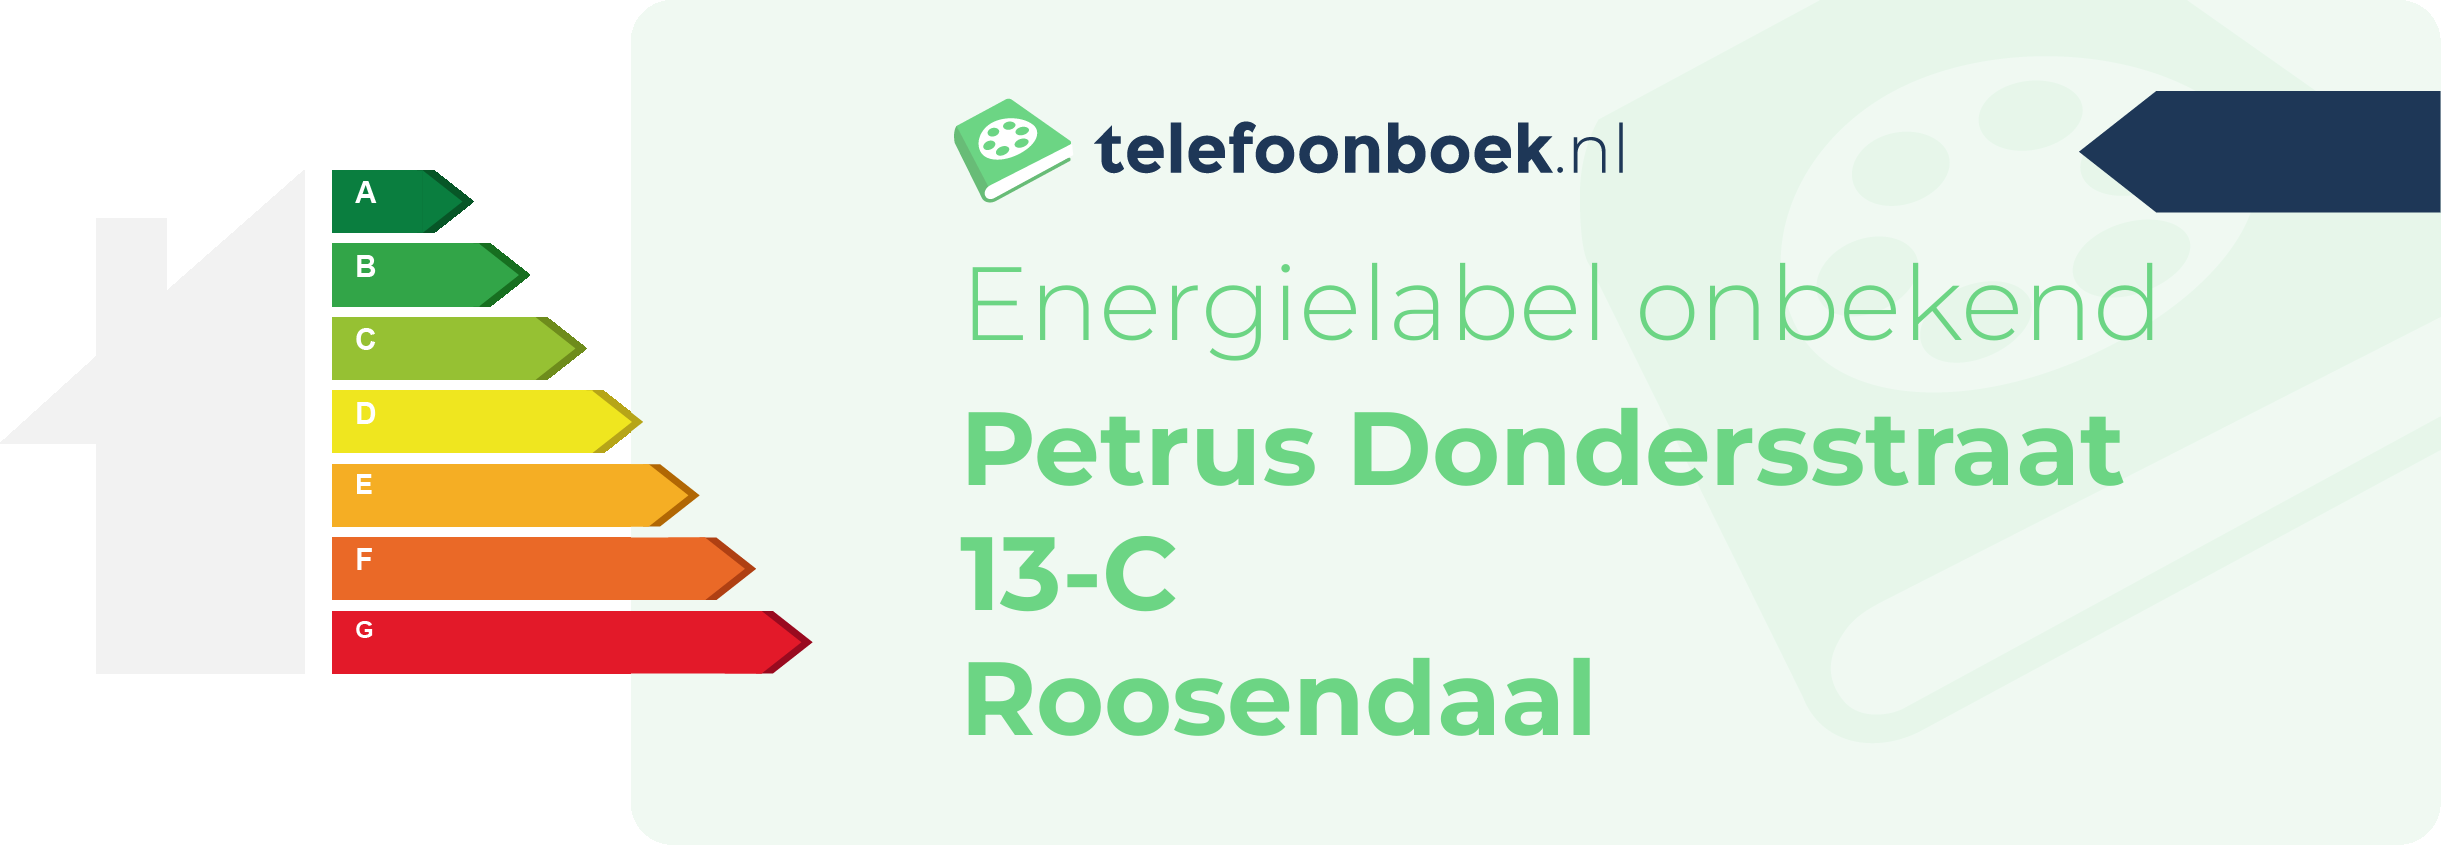 Energielabel Petrus Dondersstraat 13-C Roosendaal